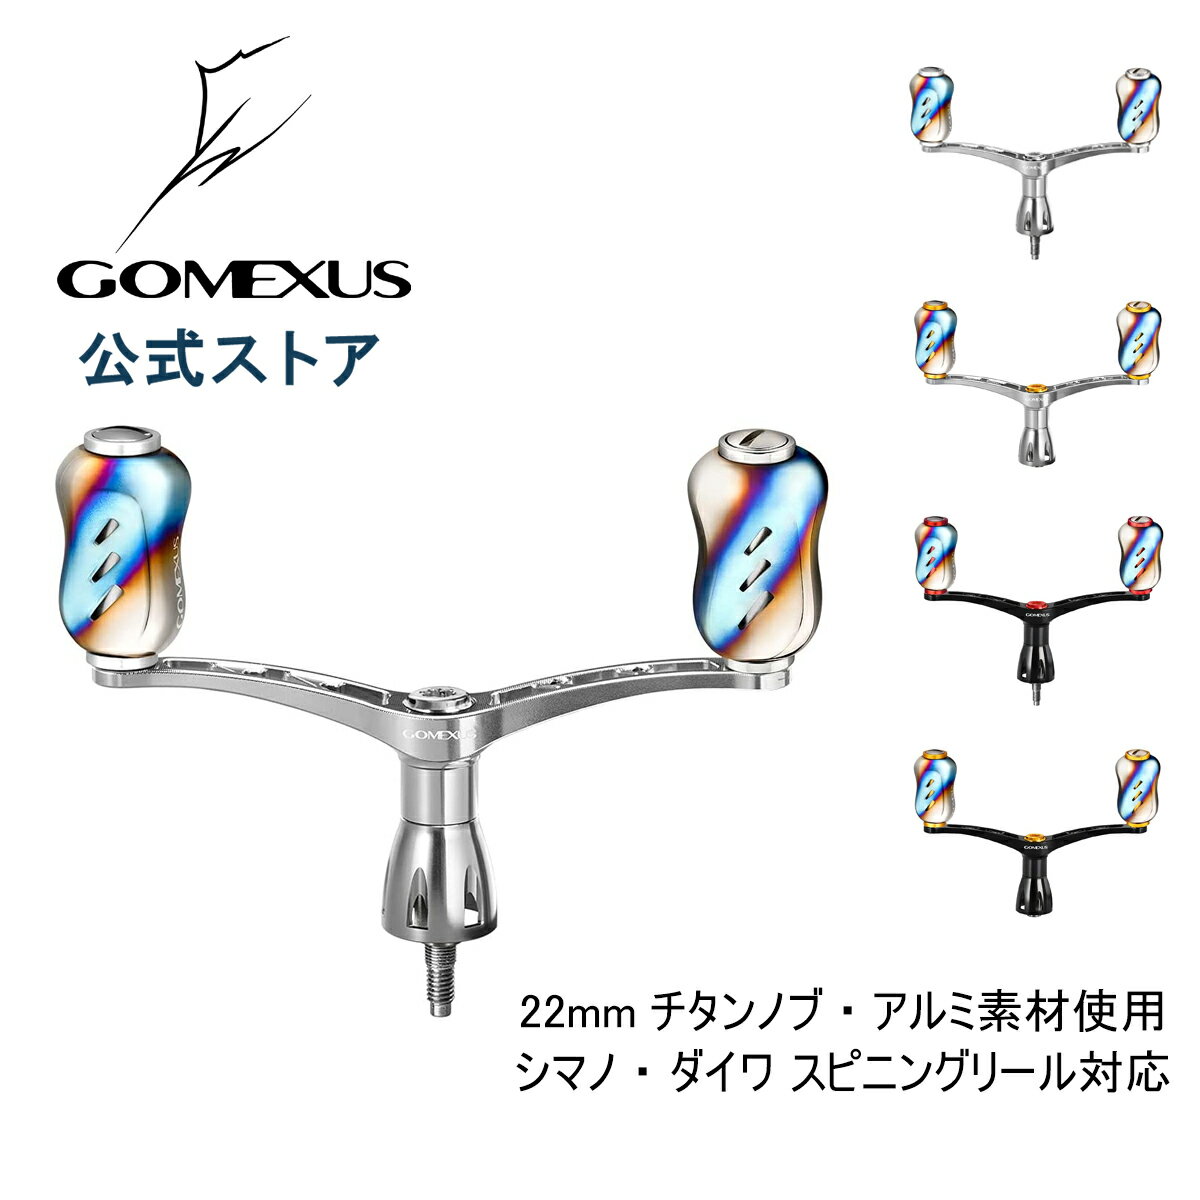 【送料無料】 ゴメクサス (Gomexus) ダブル ハンドル 98mm シマノ (Shimano) ダイワ (Daiwa) スピニングリール 用 20 ルビアス LT 2500 など用 超々ジュラルミン製 チタンノブ付き ダブルハンドル